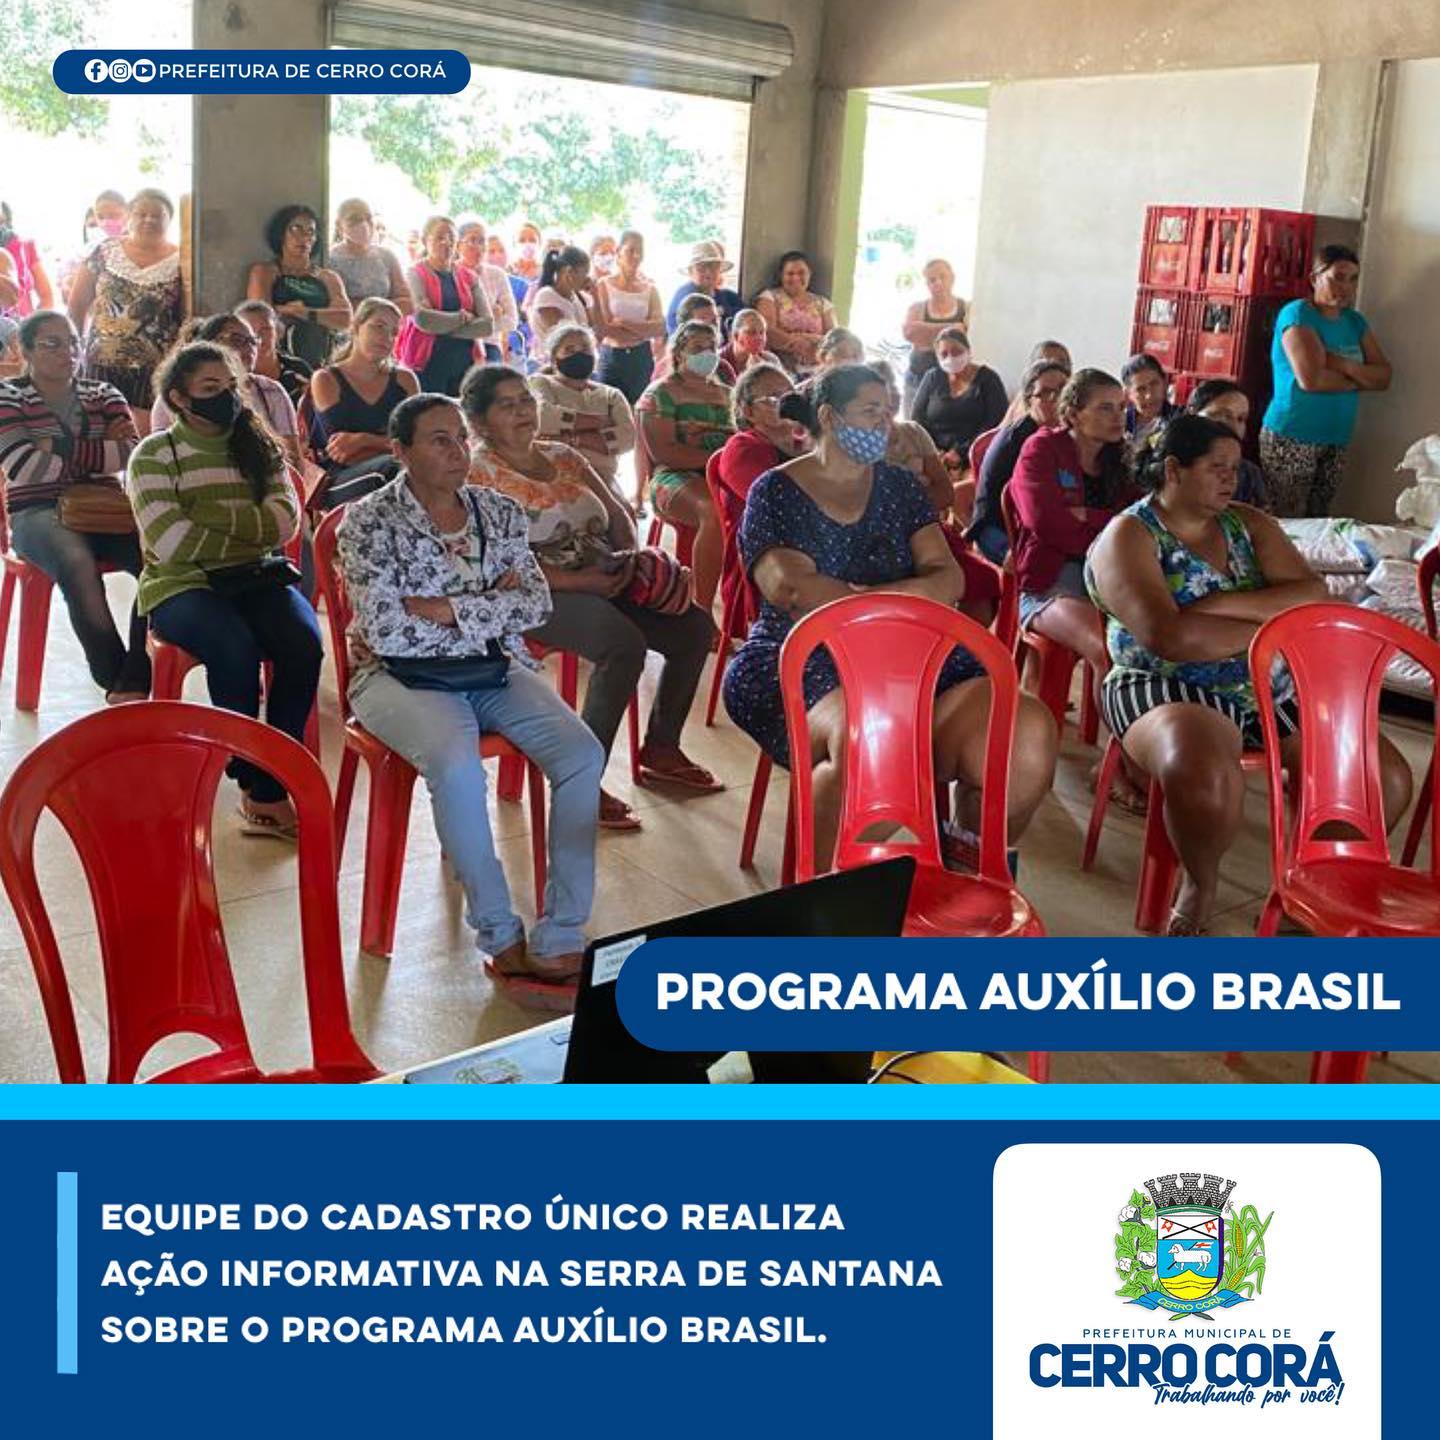 A Equipe do Cadastro Único realizou “Ação Informativa” sobre o Programa Auxílio Brasil